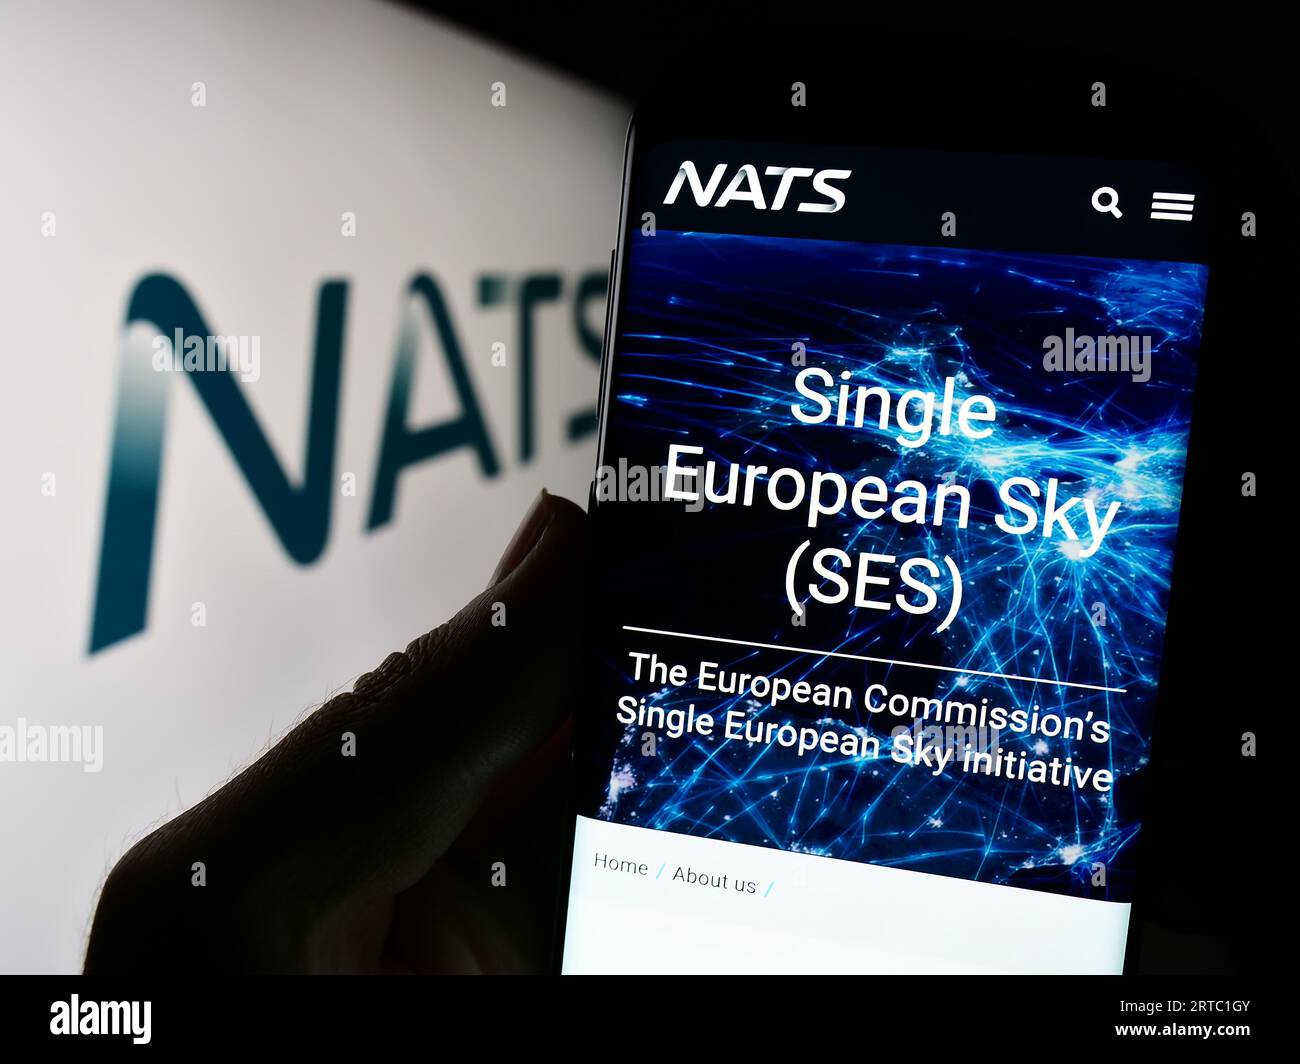 Personne détenant un smartphone avec la page Web de l'opérateur britannique de contrôle du trafic aérien NATS Limited sur l'écran avec logo. Concentrez-vous sur le centre de l'écran du téléphone. Banque D'Images